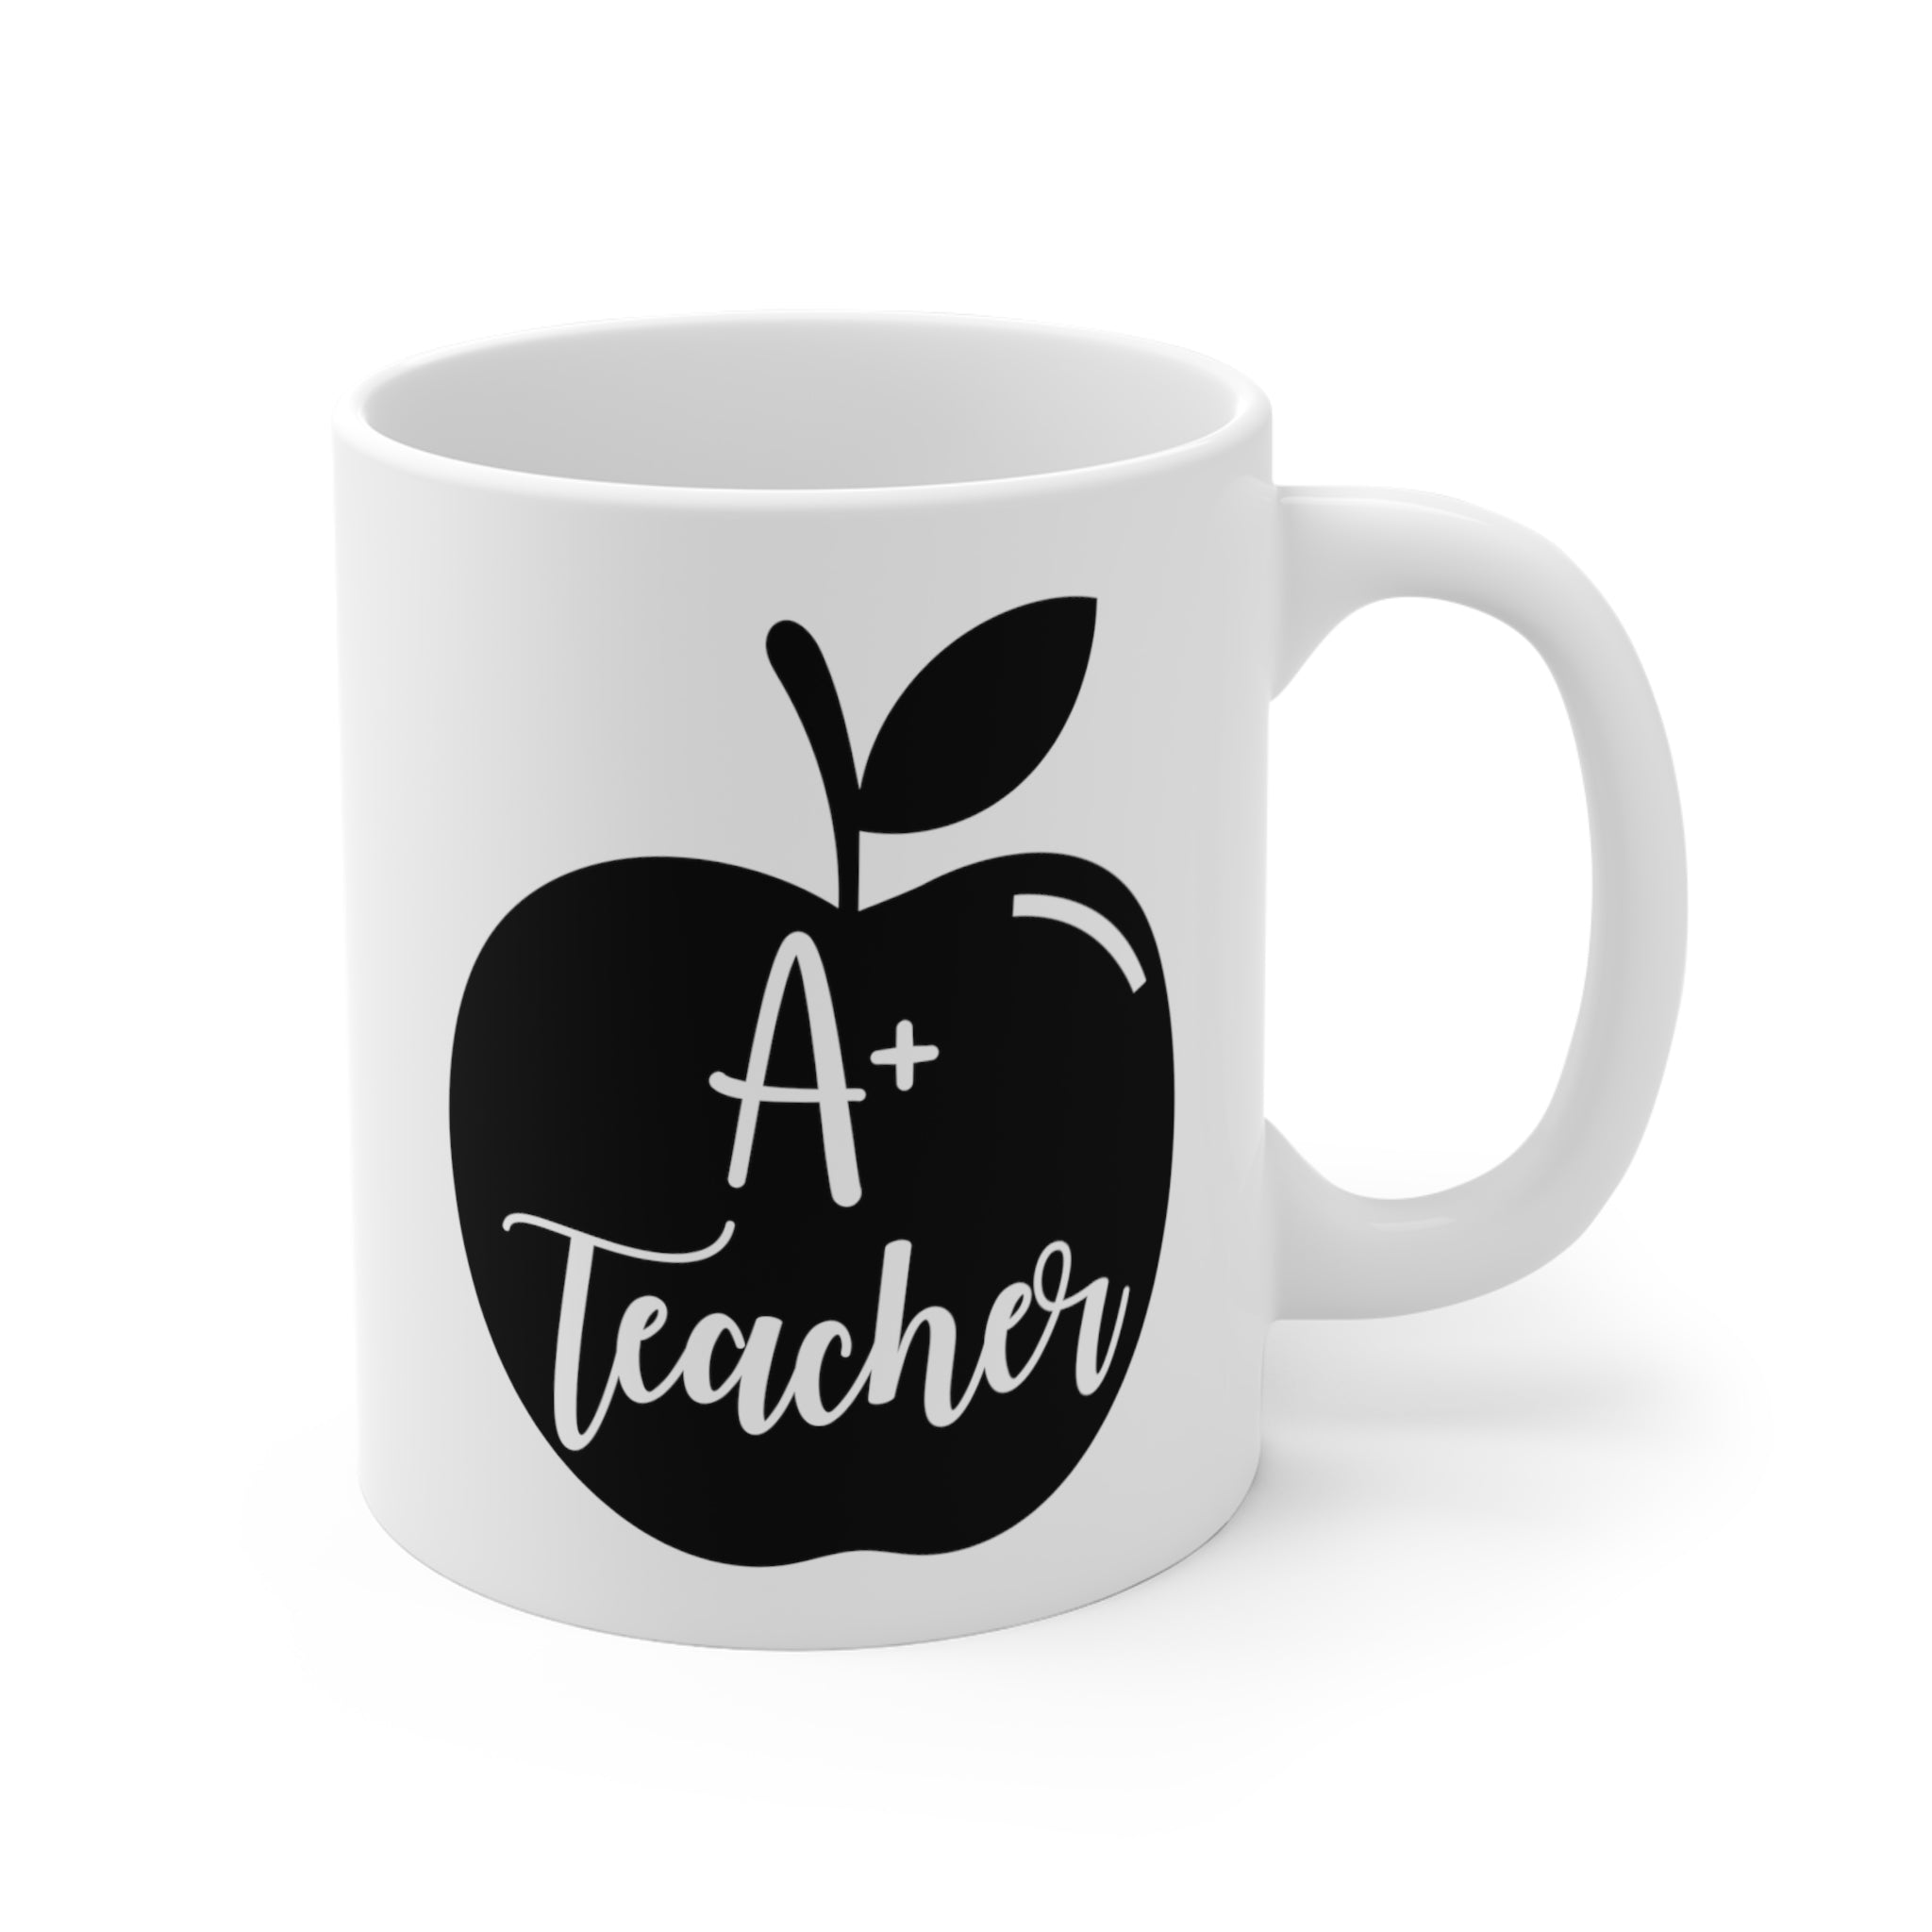 A+ Teacher Mug | Gift Mug